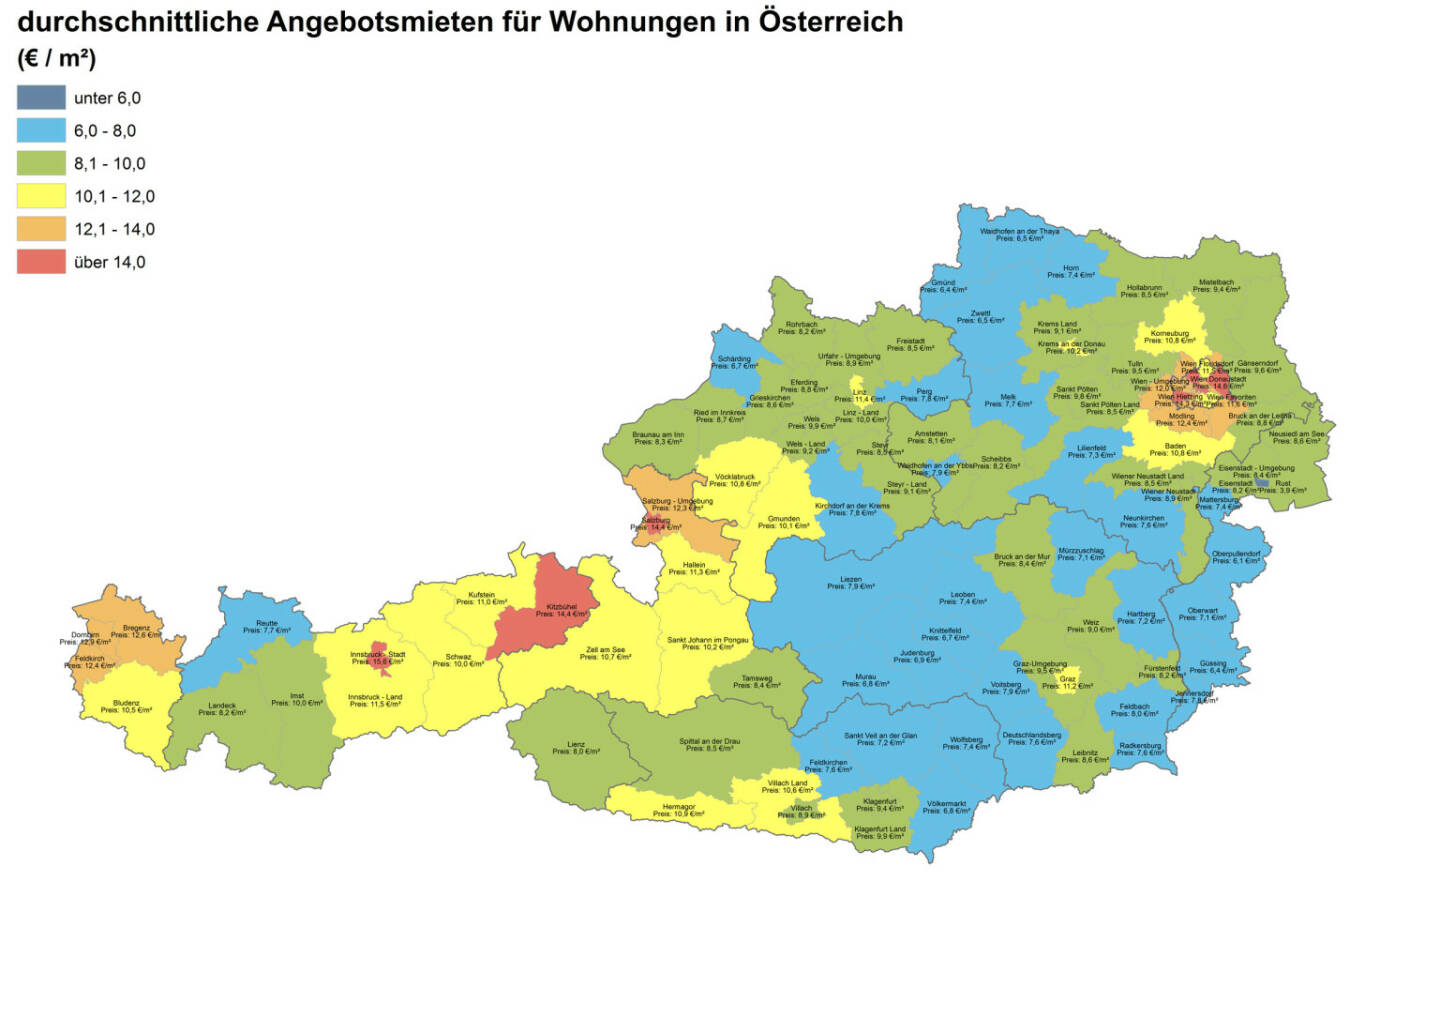 Durchschnittliche Angebotsmieten für Wohnungen in Österreich, Quelle: ImmobilienScout24 und Immobilienring IR